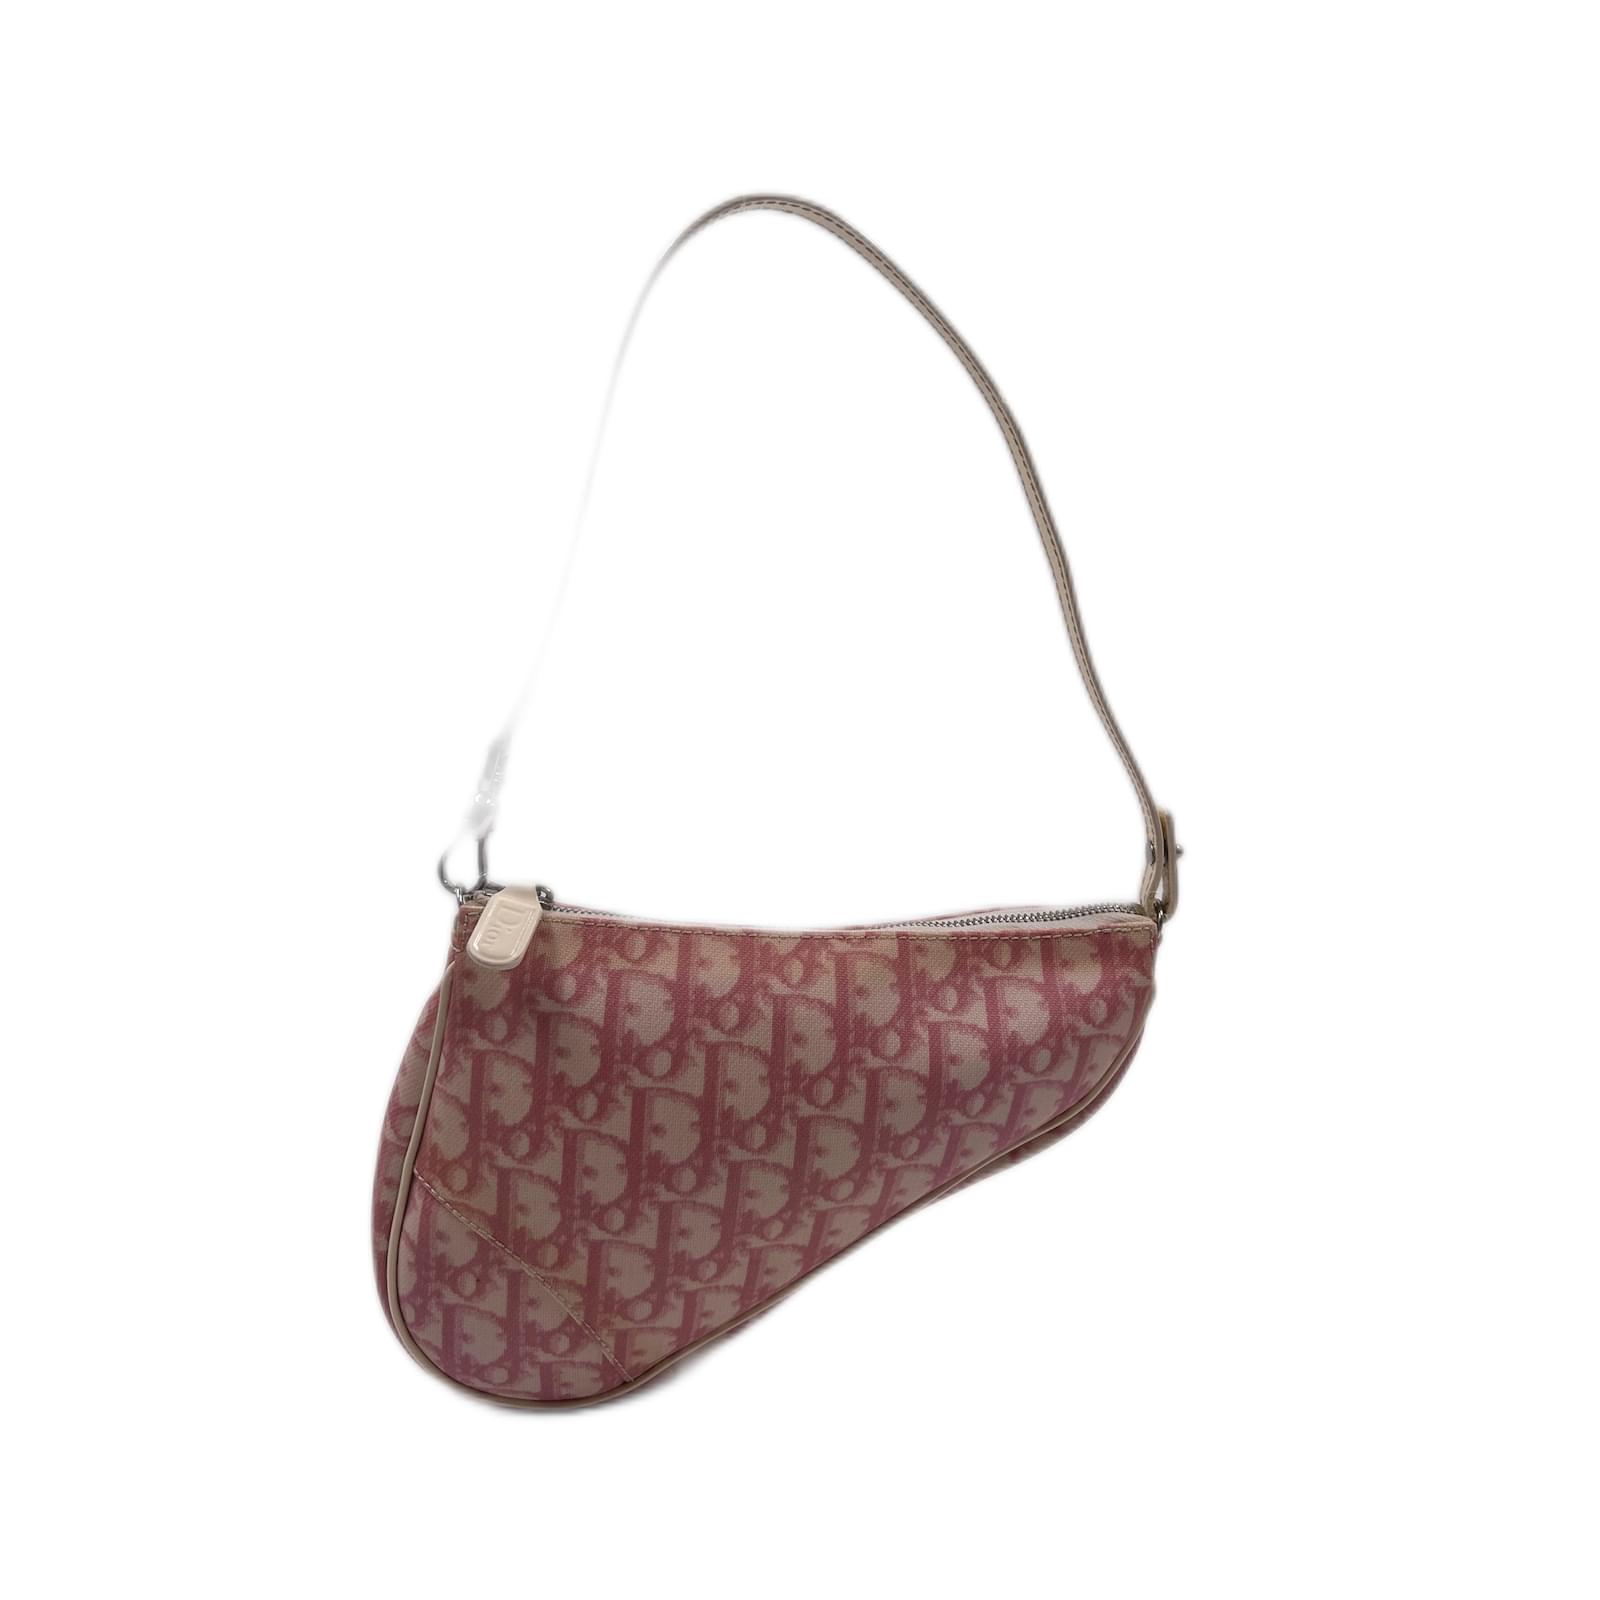 Saddle cloth handbag